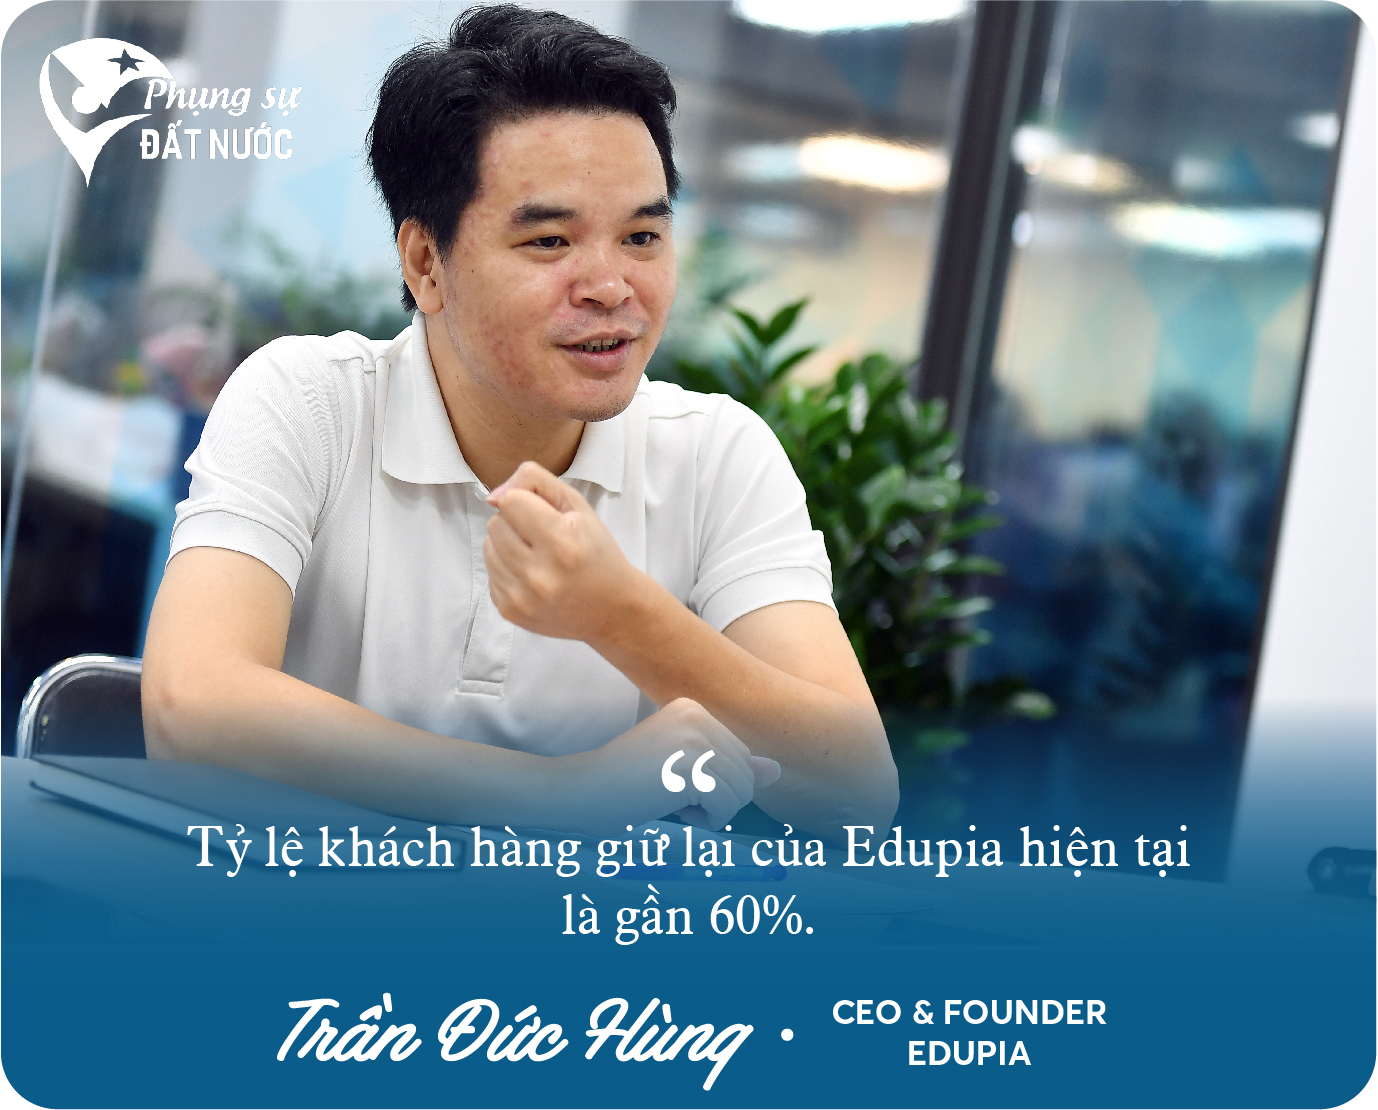 Cựu Giám đốc Digital của Viettel Telecom khởi nghiệp, lập nên Edtech dạy tiếng Anh số 1 Việt Nam: Tìm thấy cơ hội khi về quê, mơ thành ‘cận kỳ lân’ năm 2025 - Ảnh 10.